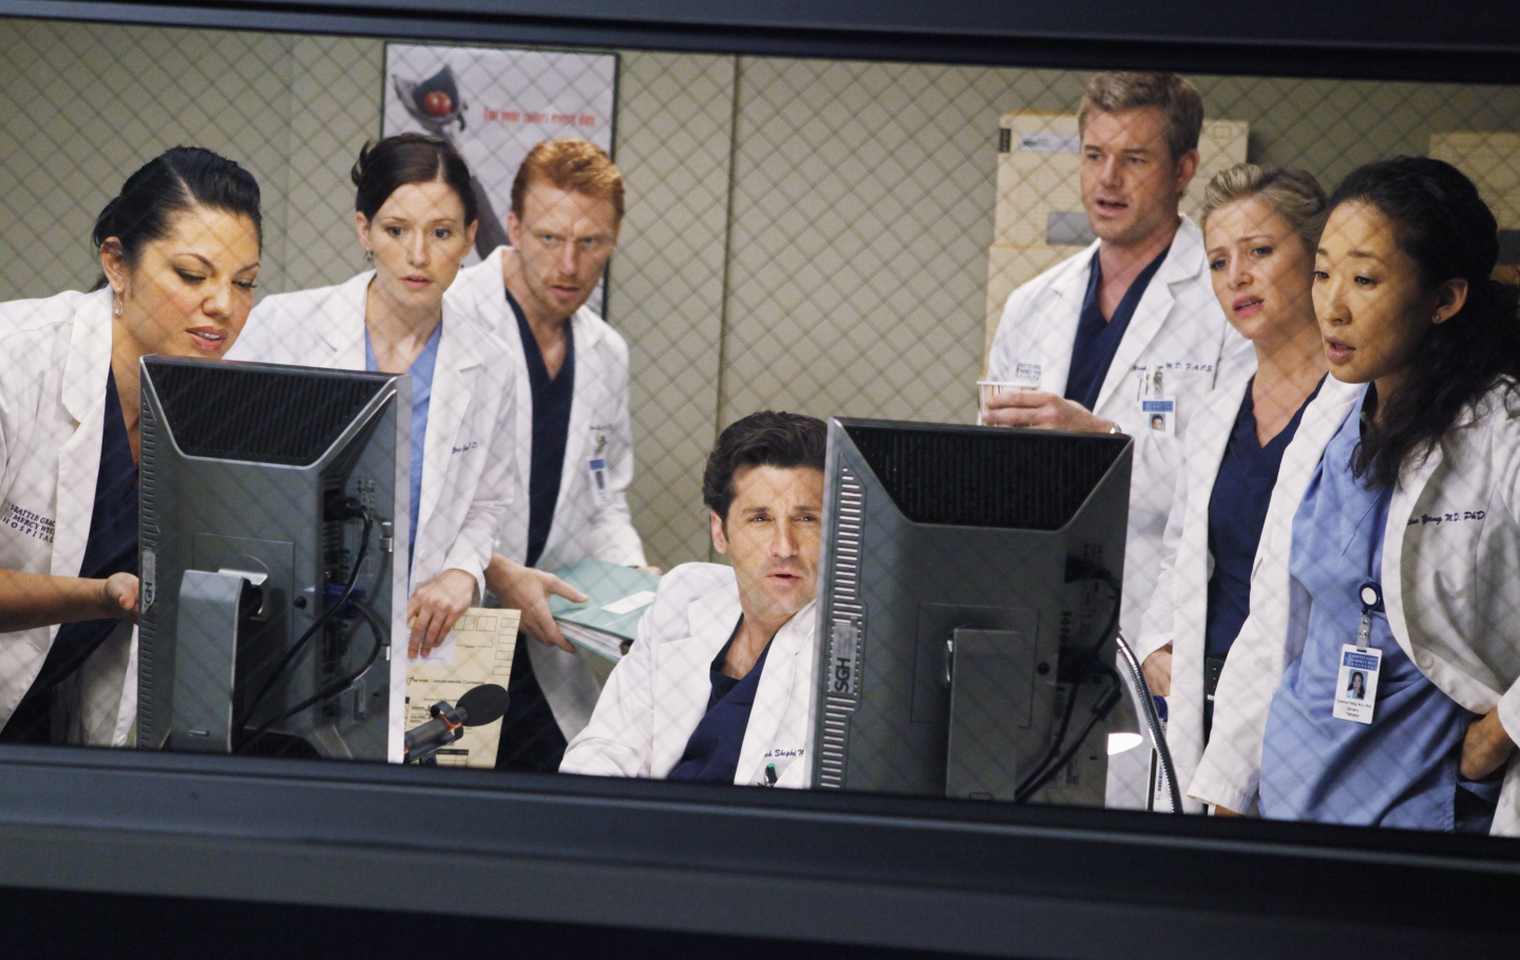 40 Top Photos Wann Geht Grays Anatomy Weiter : "Grey's Anatomy": So geht es in Staffel 17 weiter